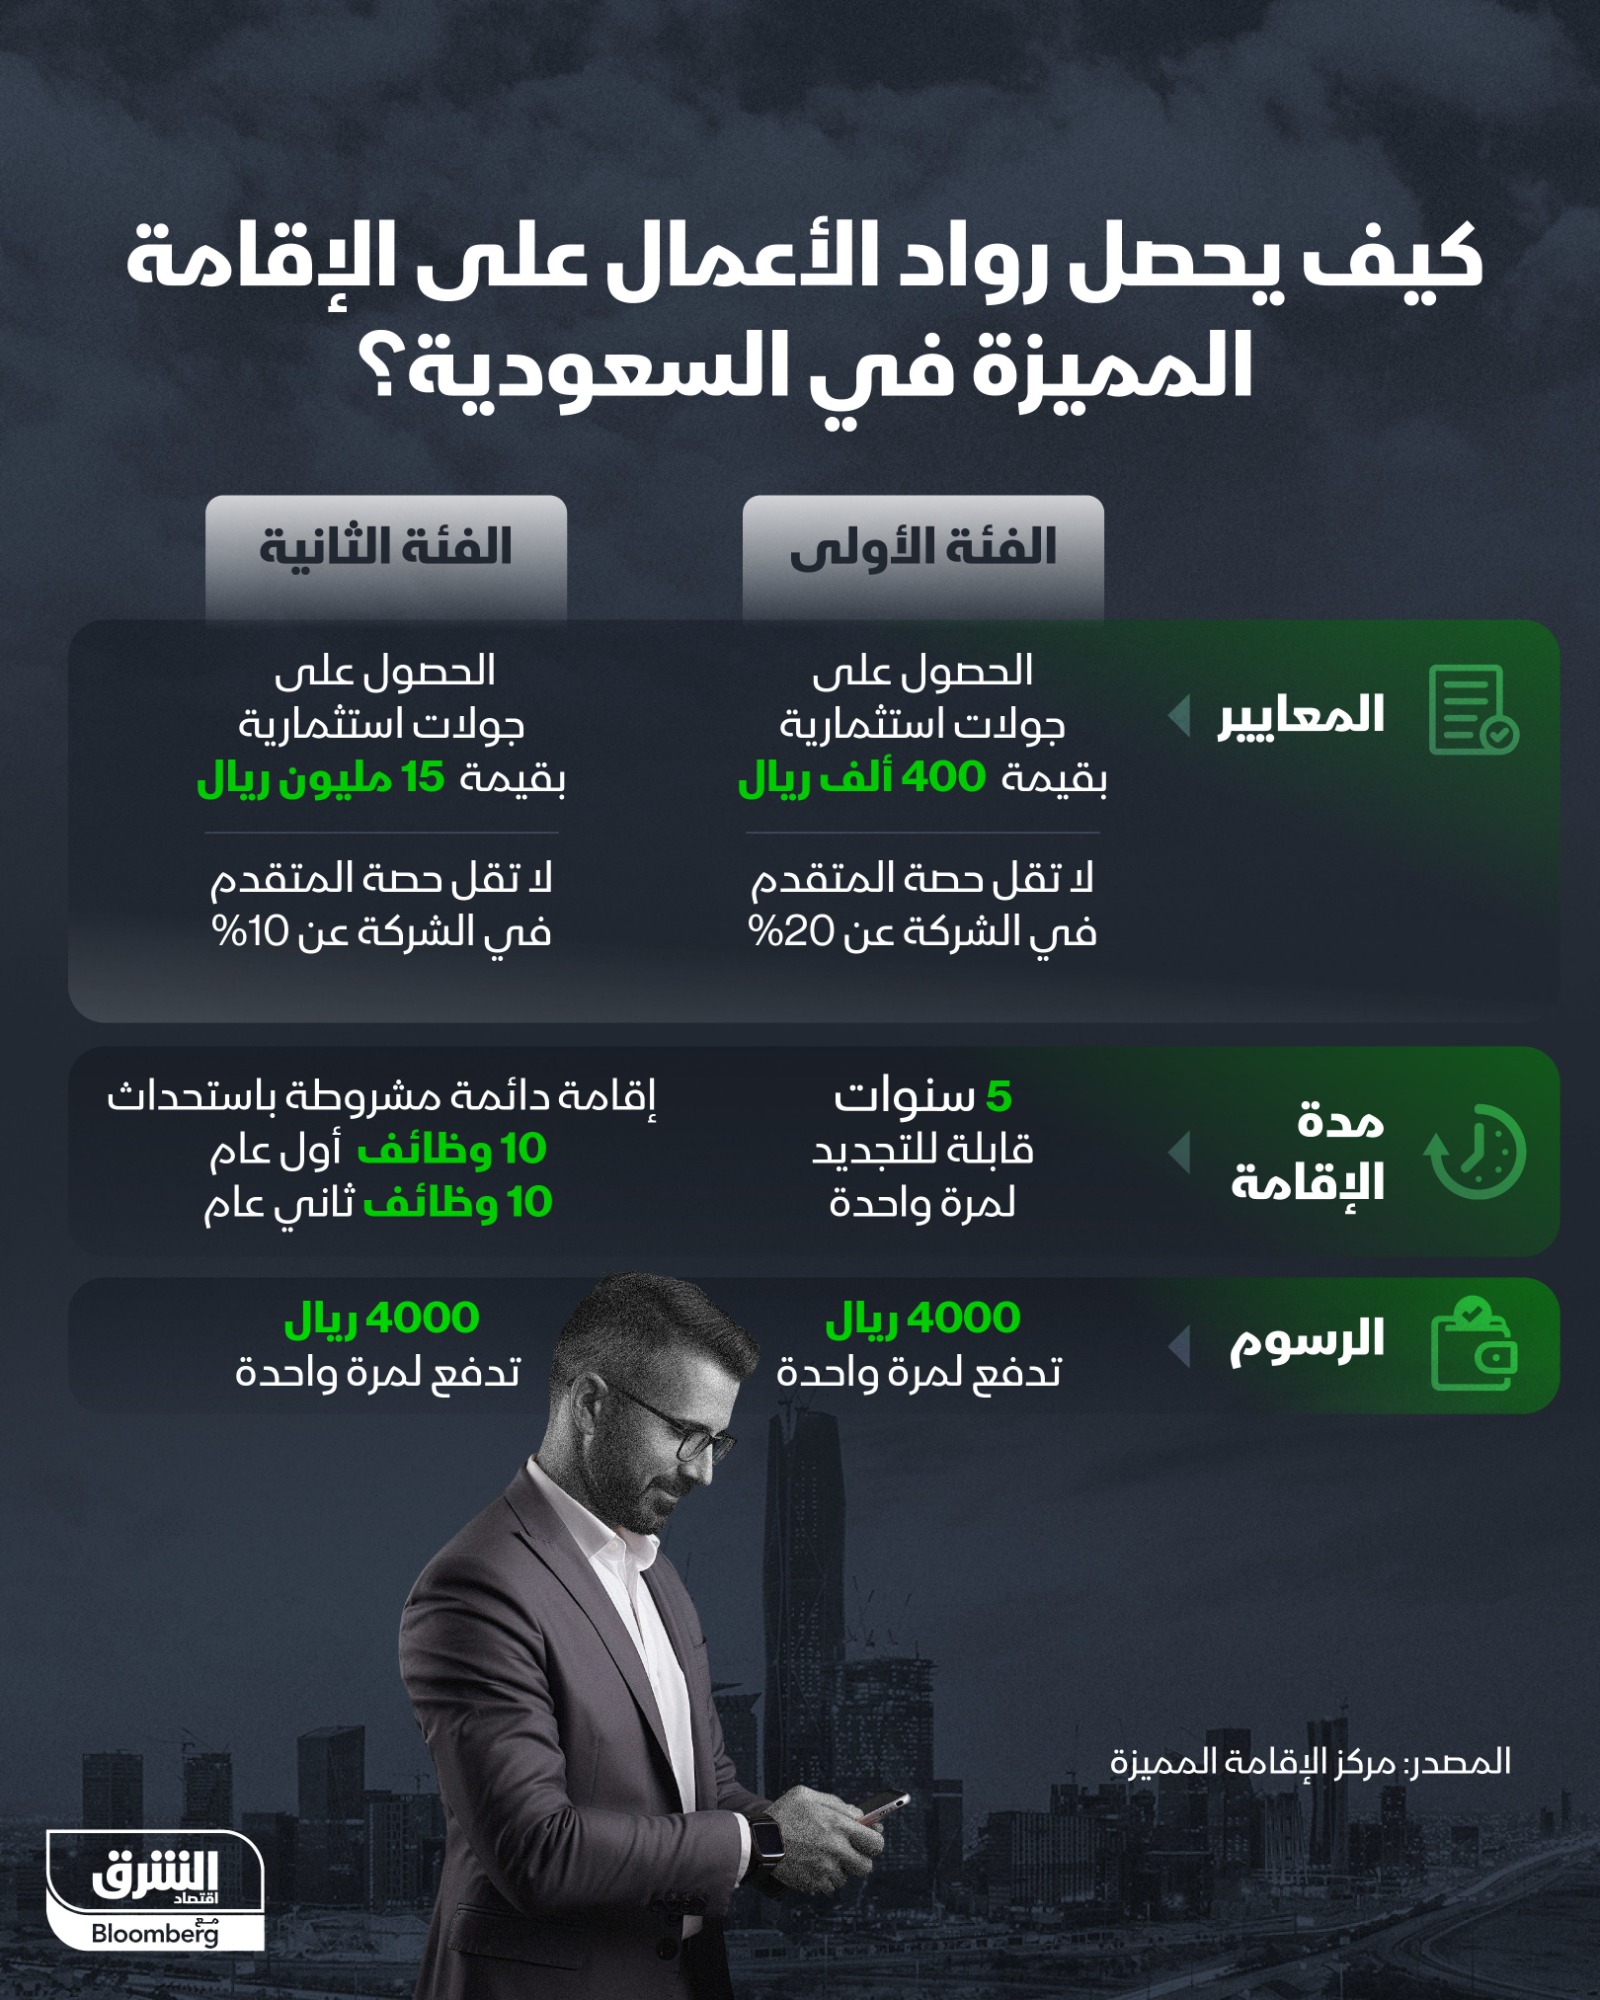 إنفوجرافيك يوضح شروط وإجراءات الحصول على إقامة رائد أعمال في السعودية